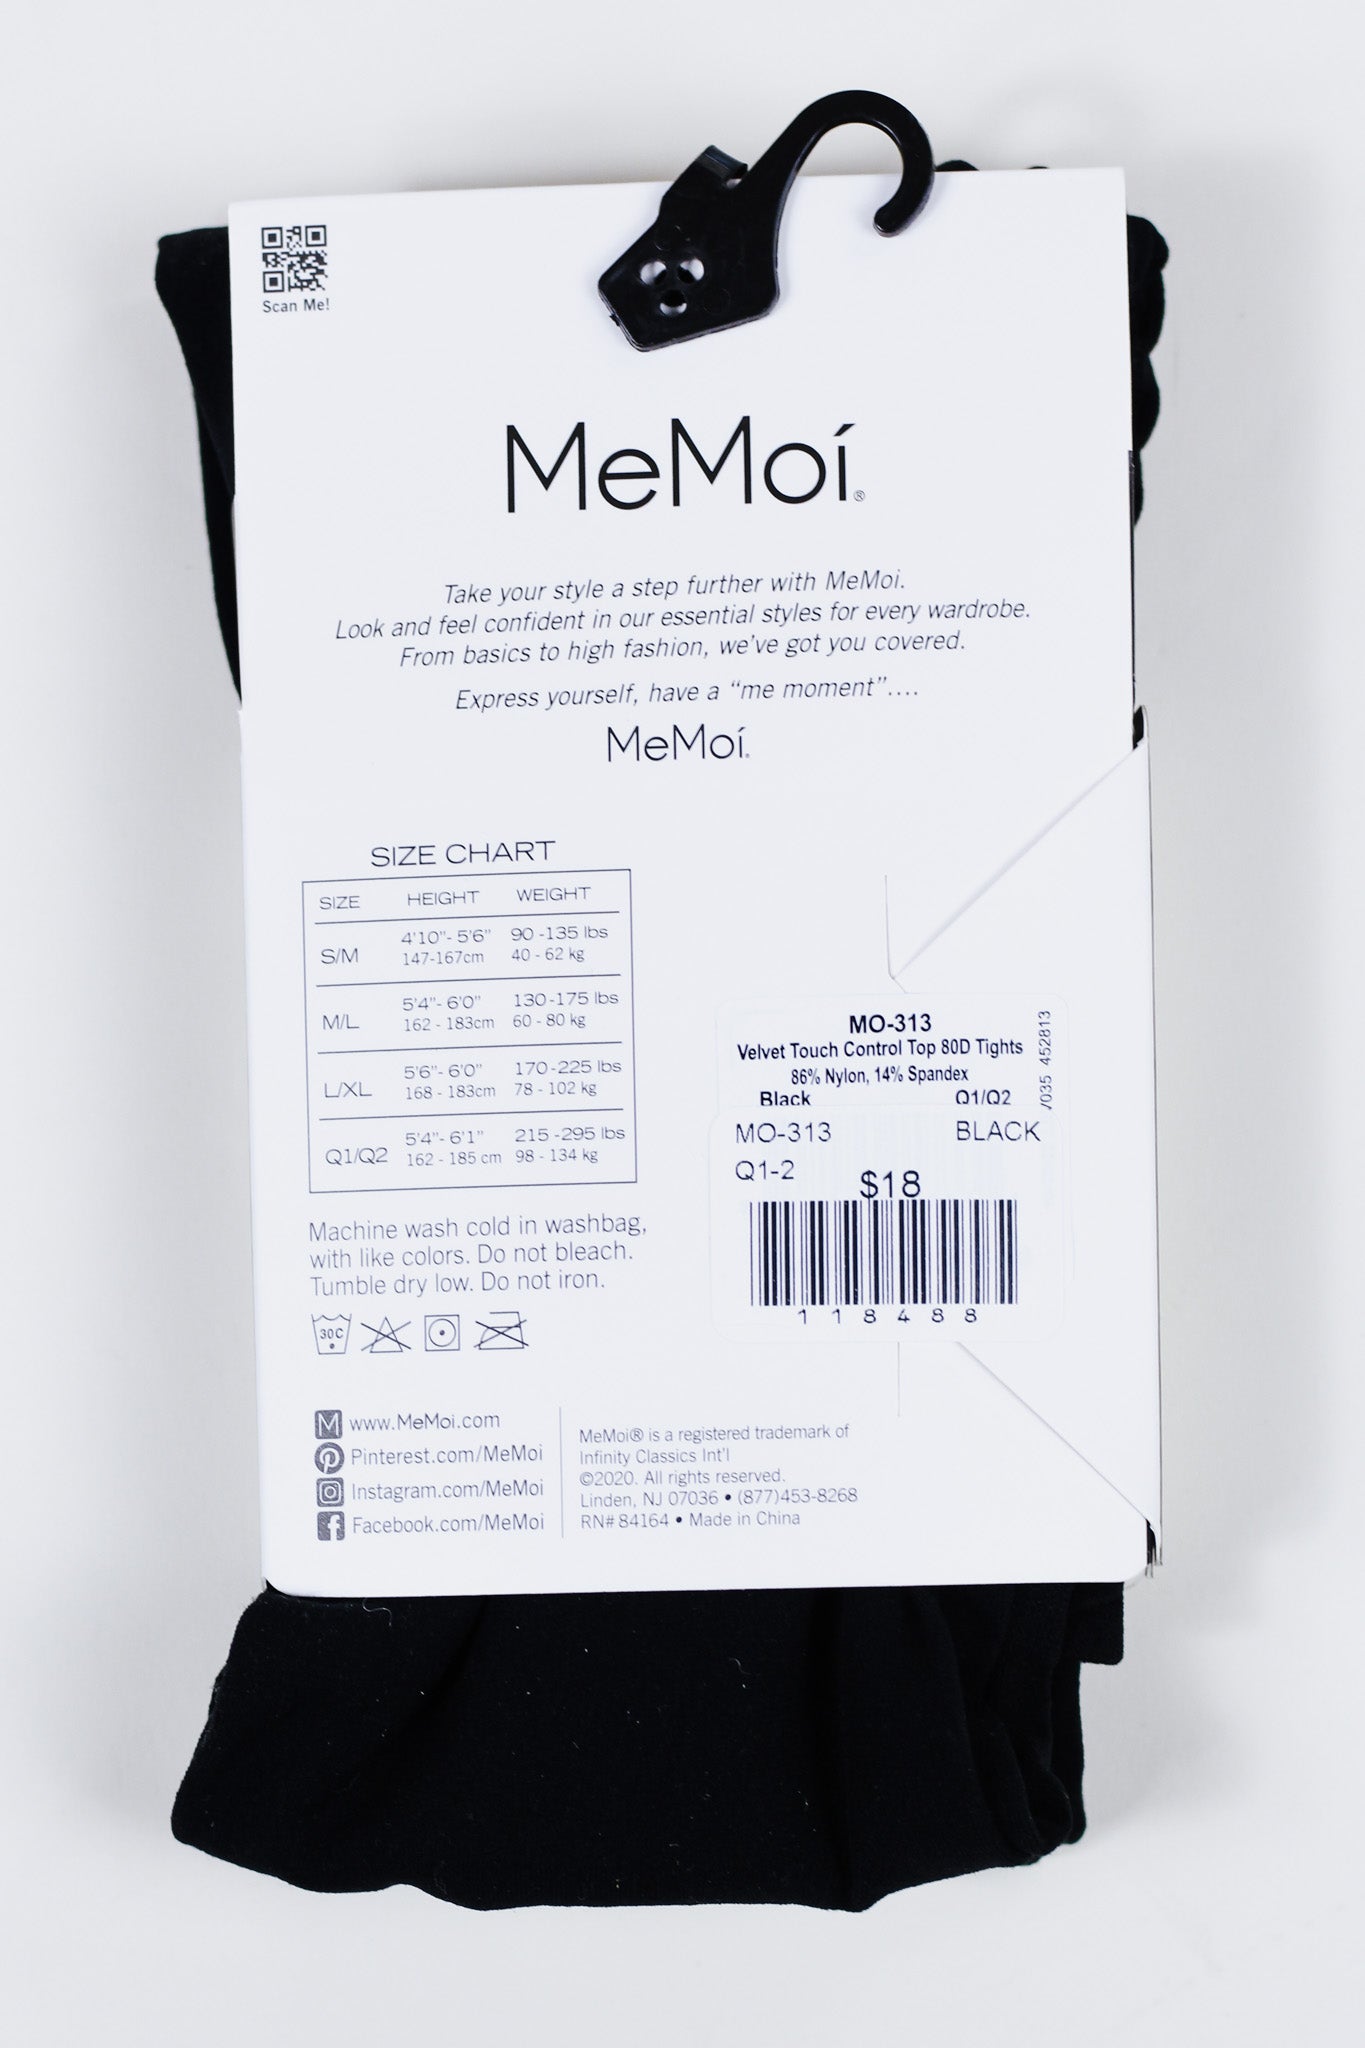 MeMoi Black Velvet Touch Sheer Tights